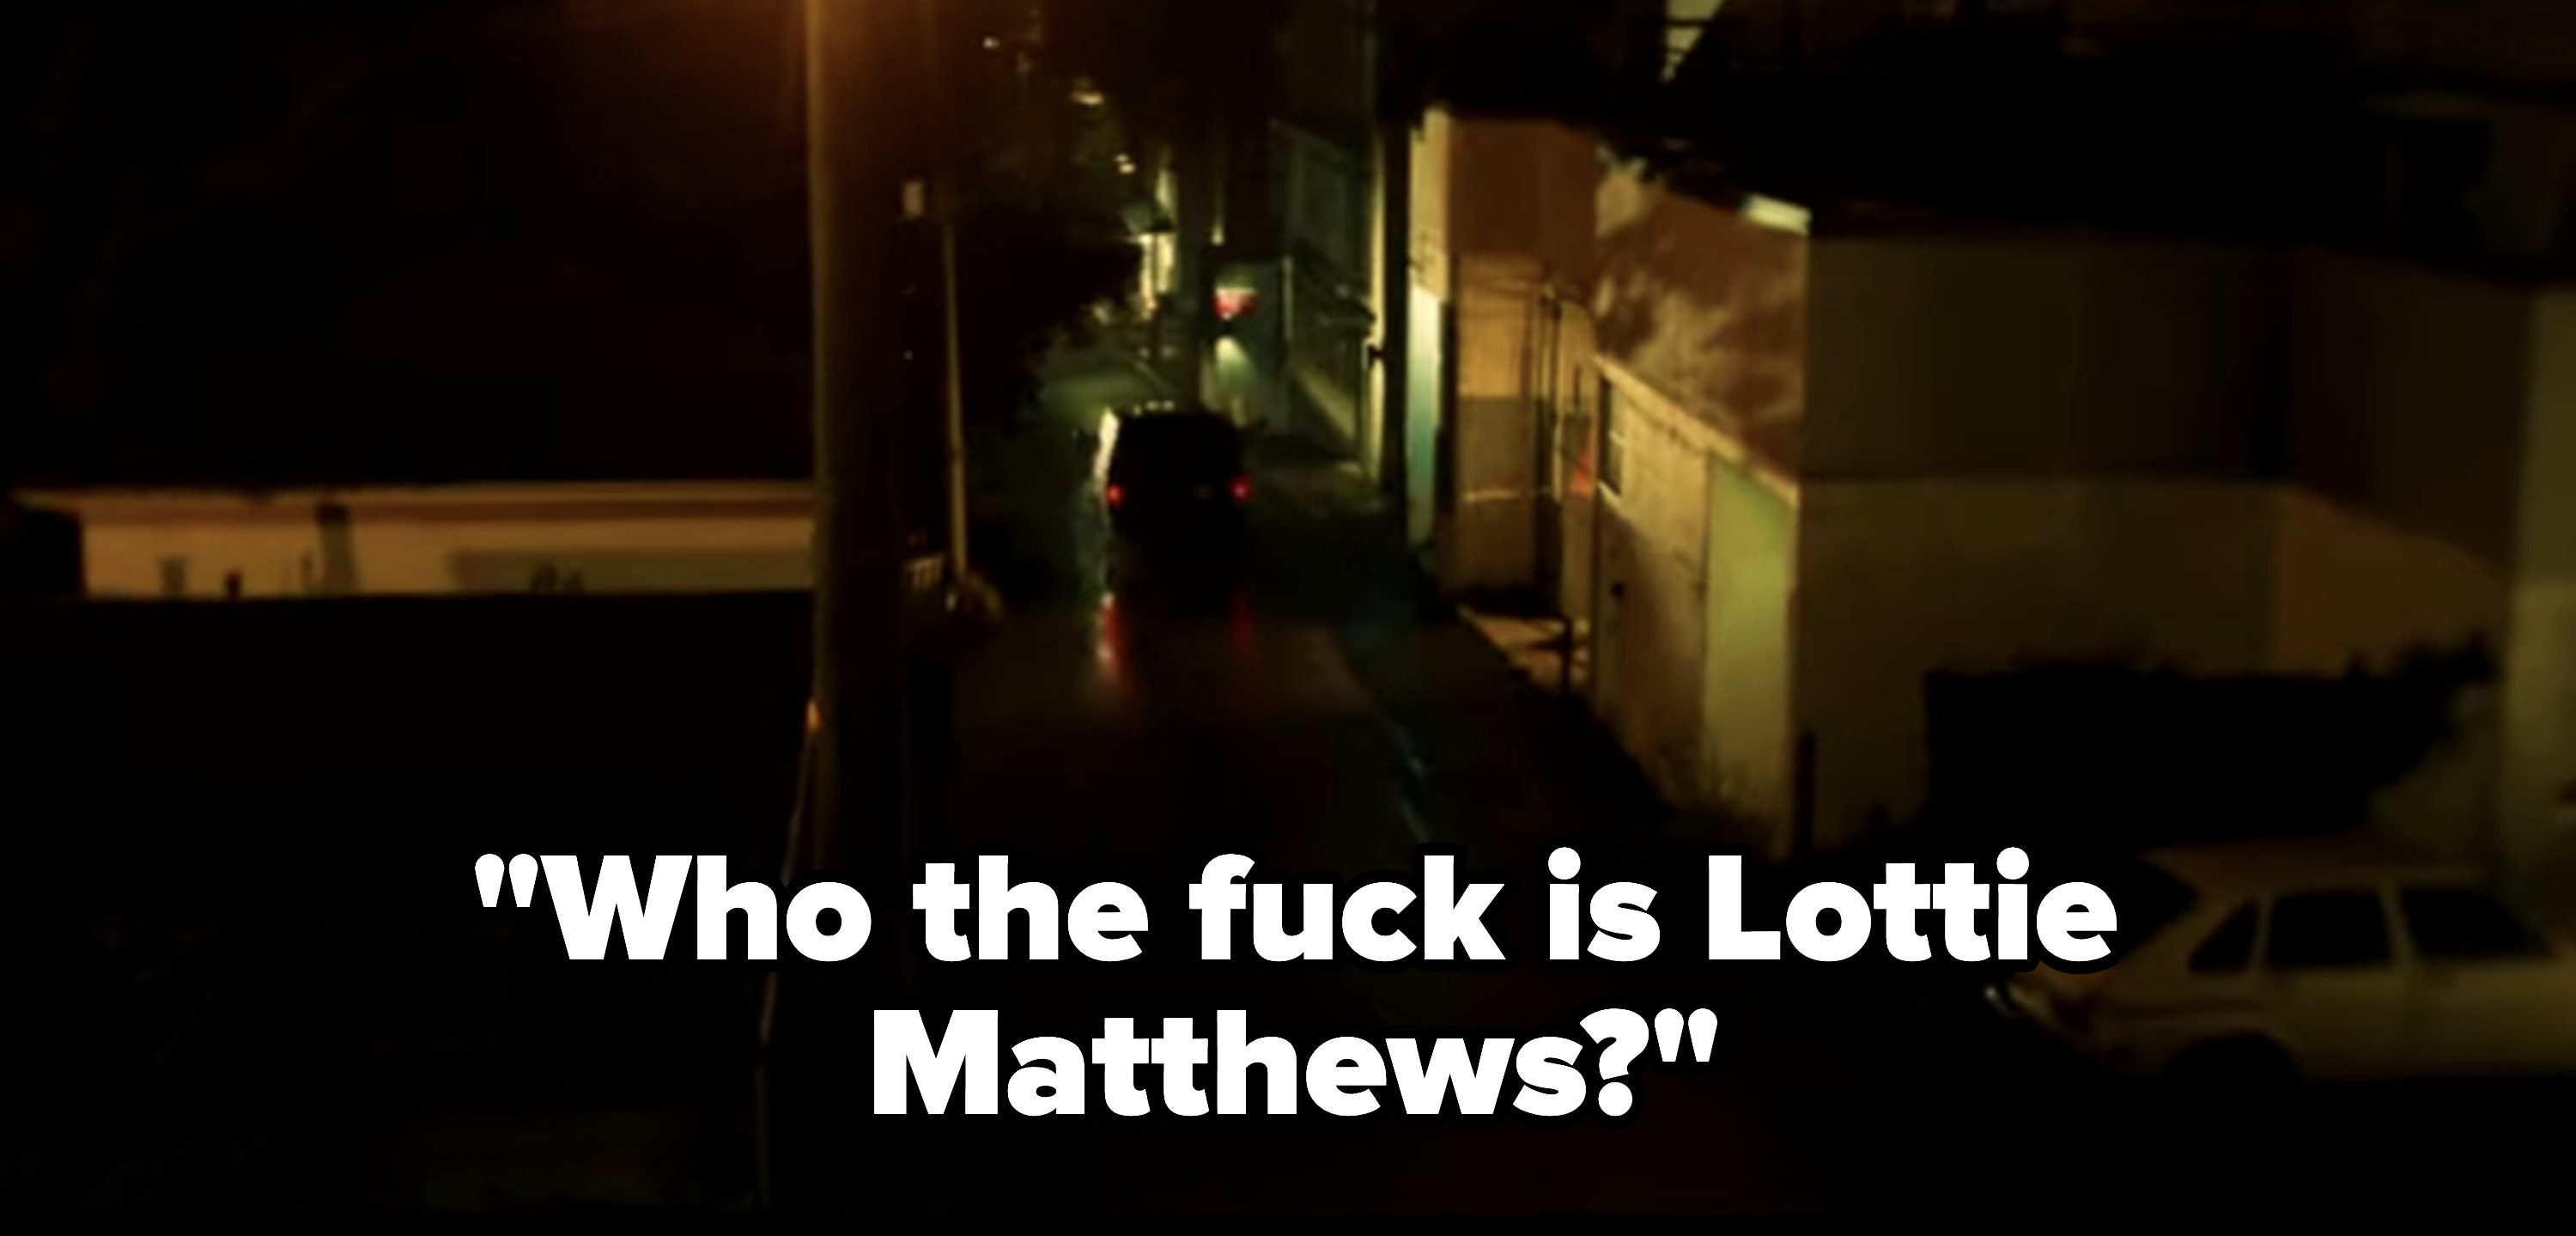 Natalie&#x27;s friend asks &quot;Who the fuck is Lottie Matthews?&quot;